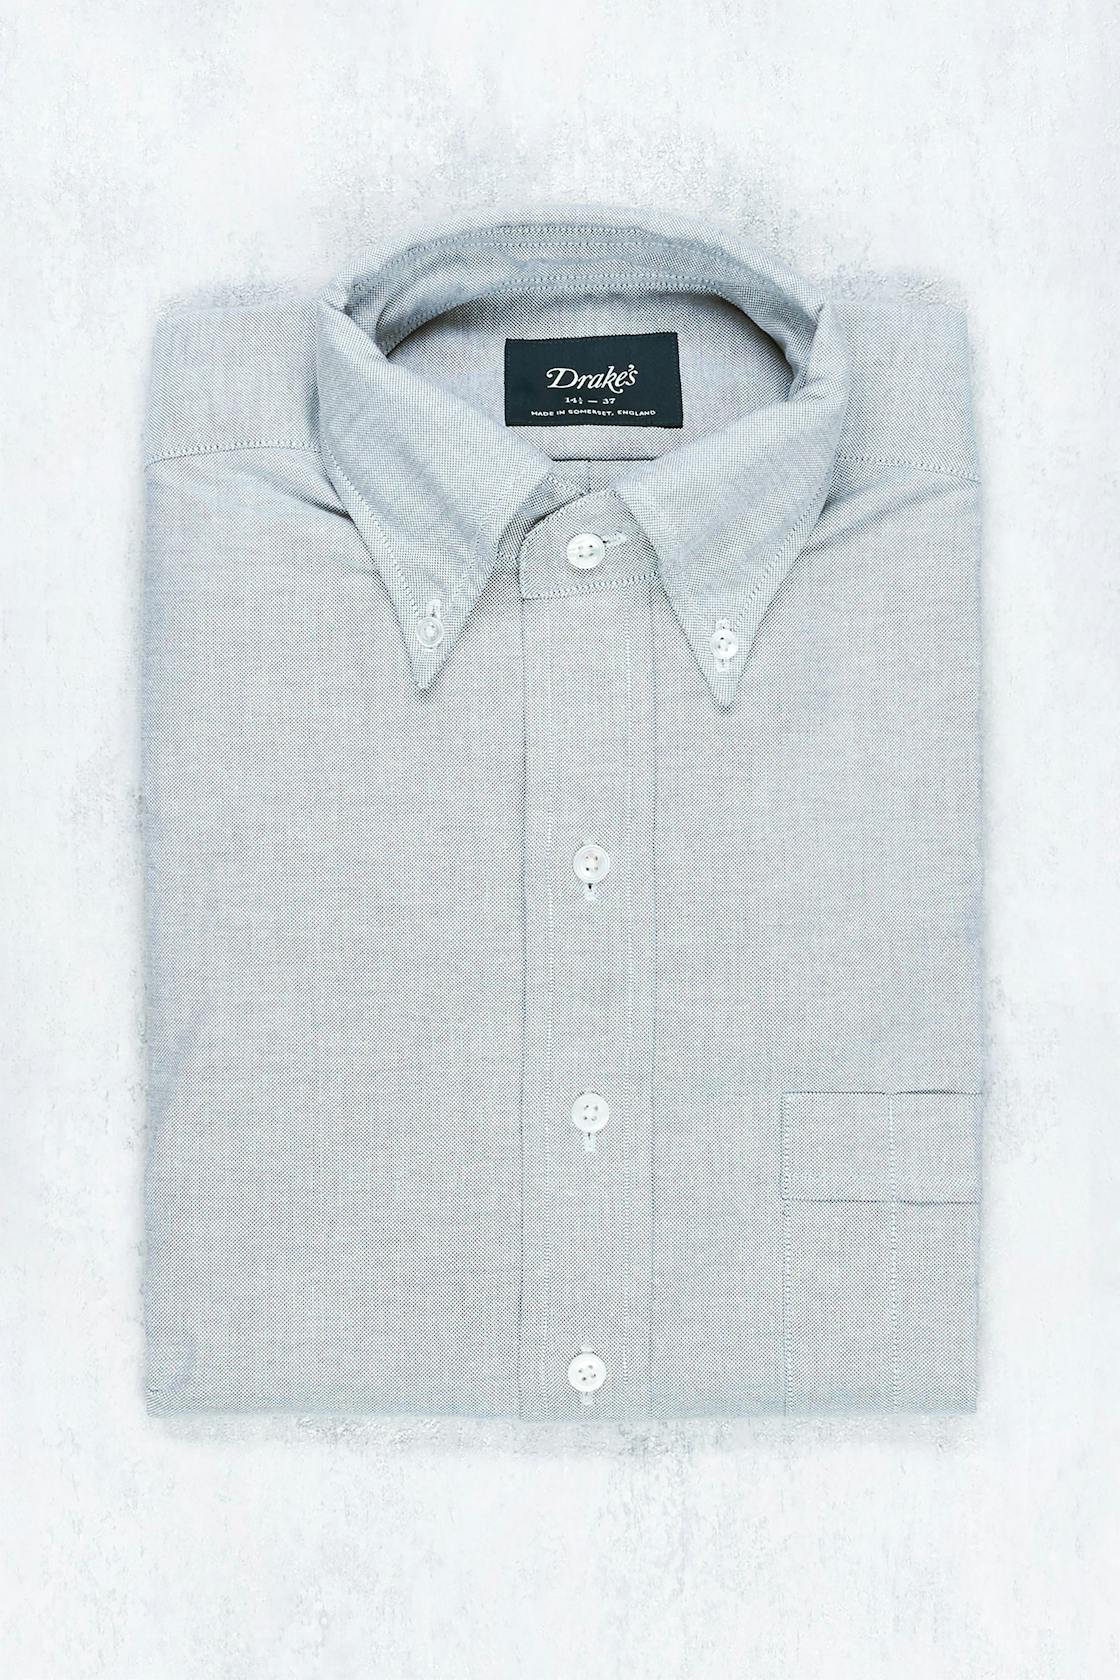 Drake's Grey Cotton Button-down Shirt